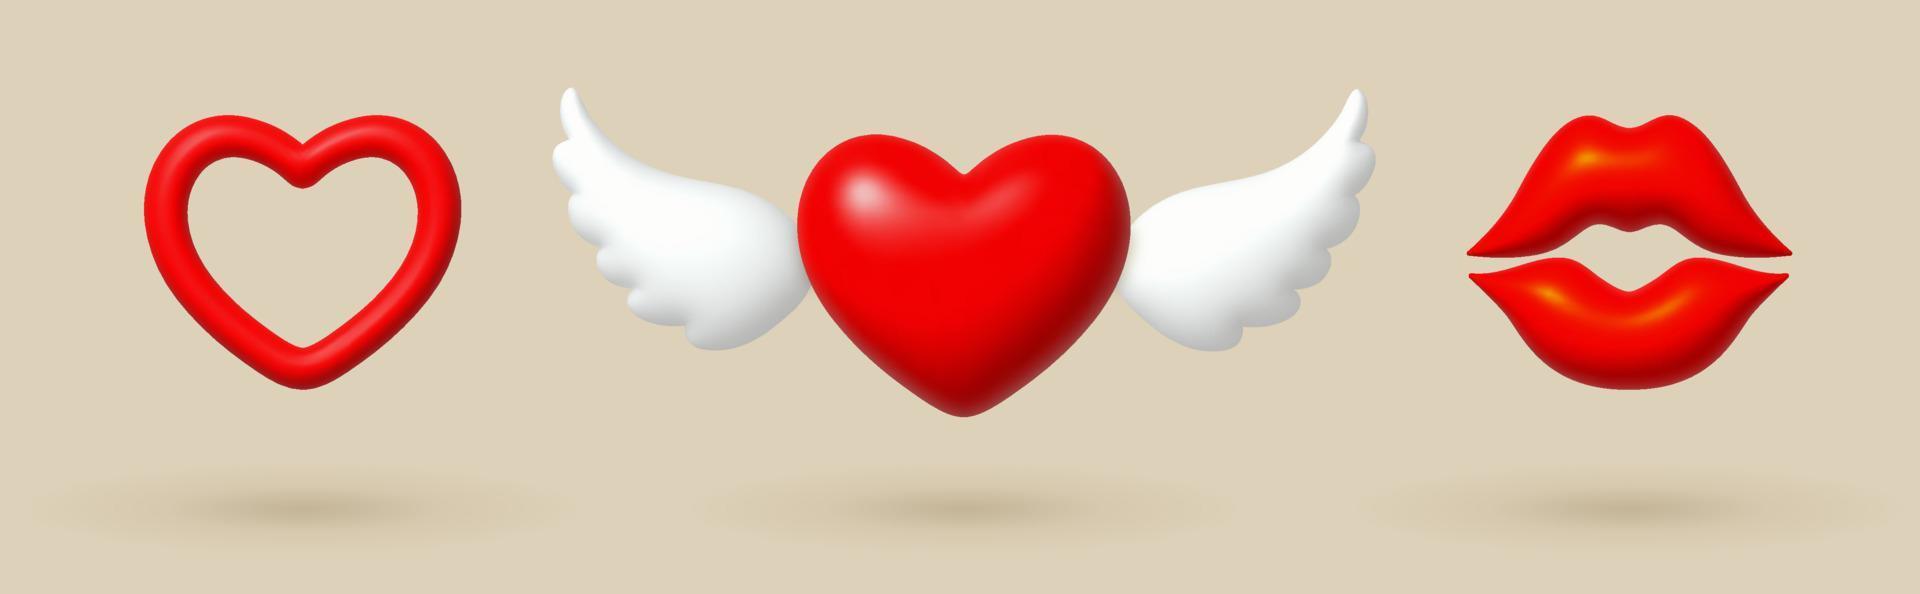 contento San Valentín día. amor 3d íconos corazones y labios. vector